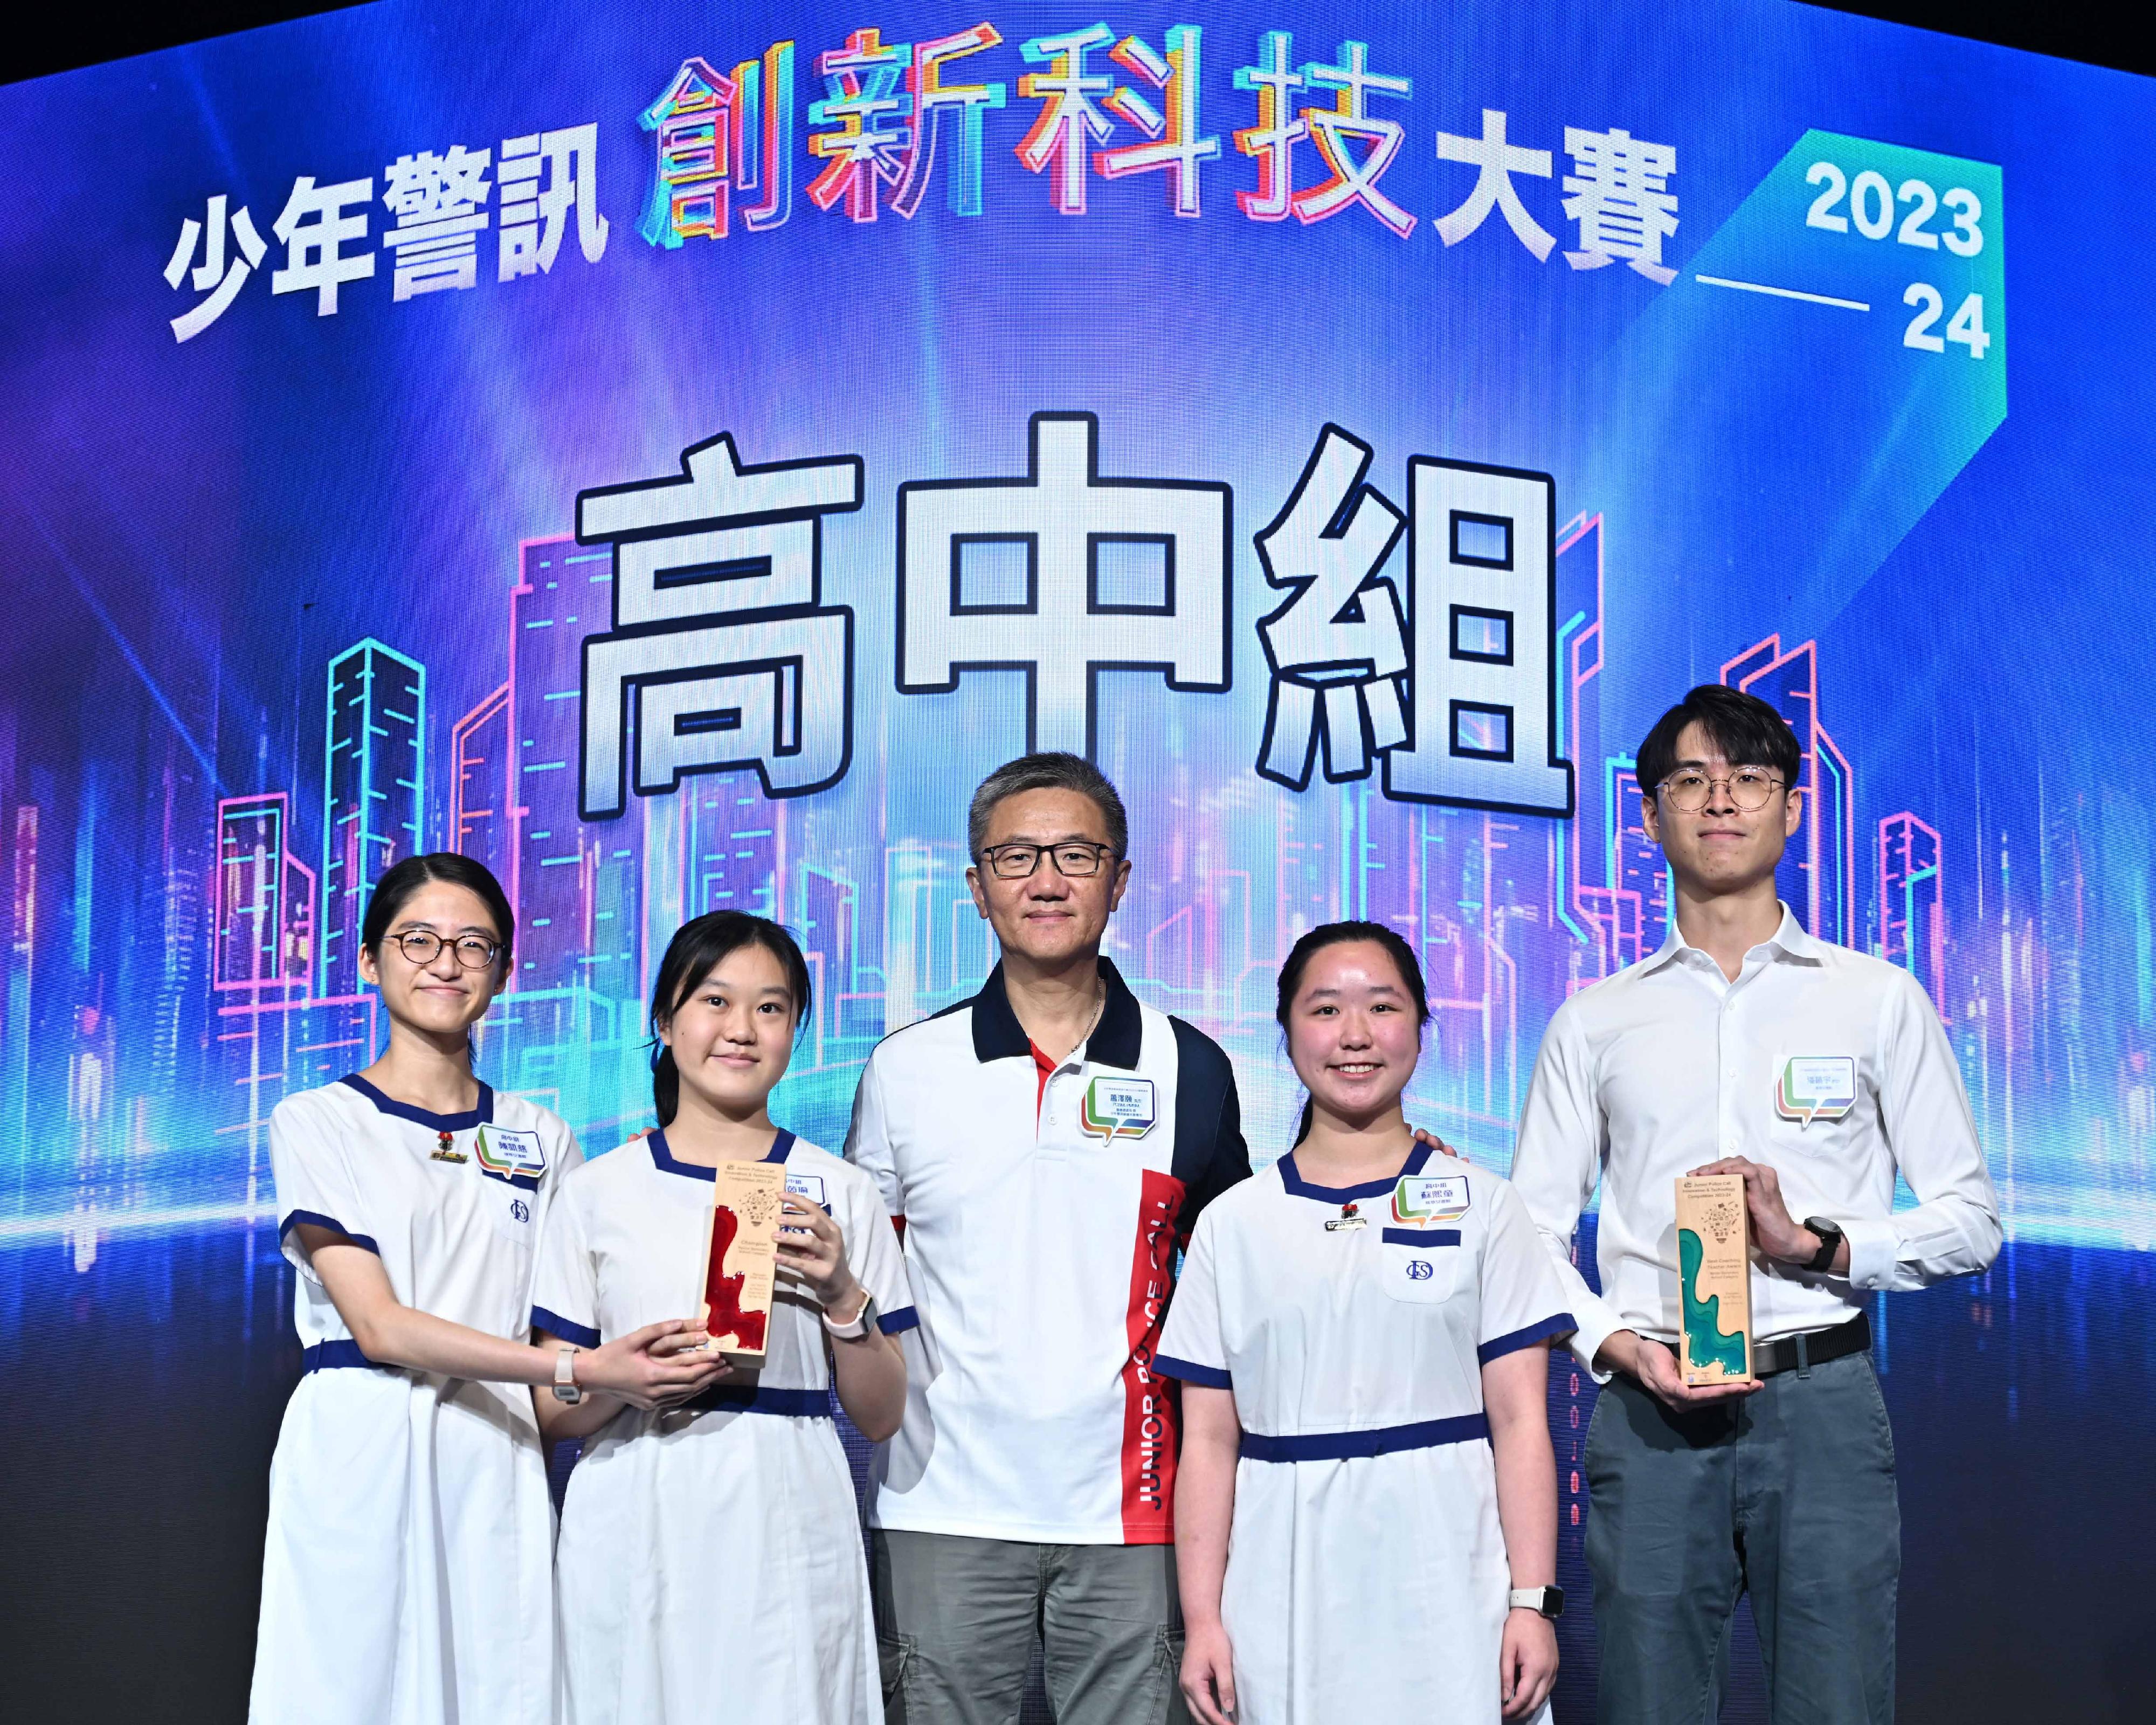 少年警讯主办的「少年警讯创新科技大赛 2023-24」今日（五月十一日）在香港会议展览中心举行颁奖典礼。图示警务处处长萧泽颐（中）颁发高中组冠军奬项。